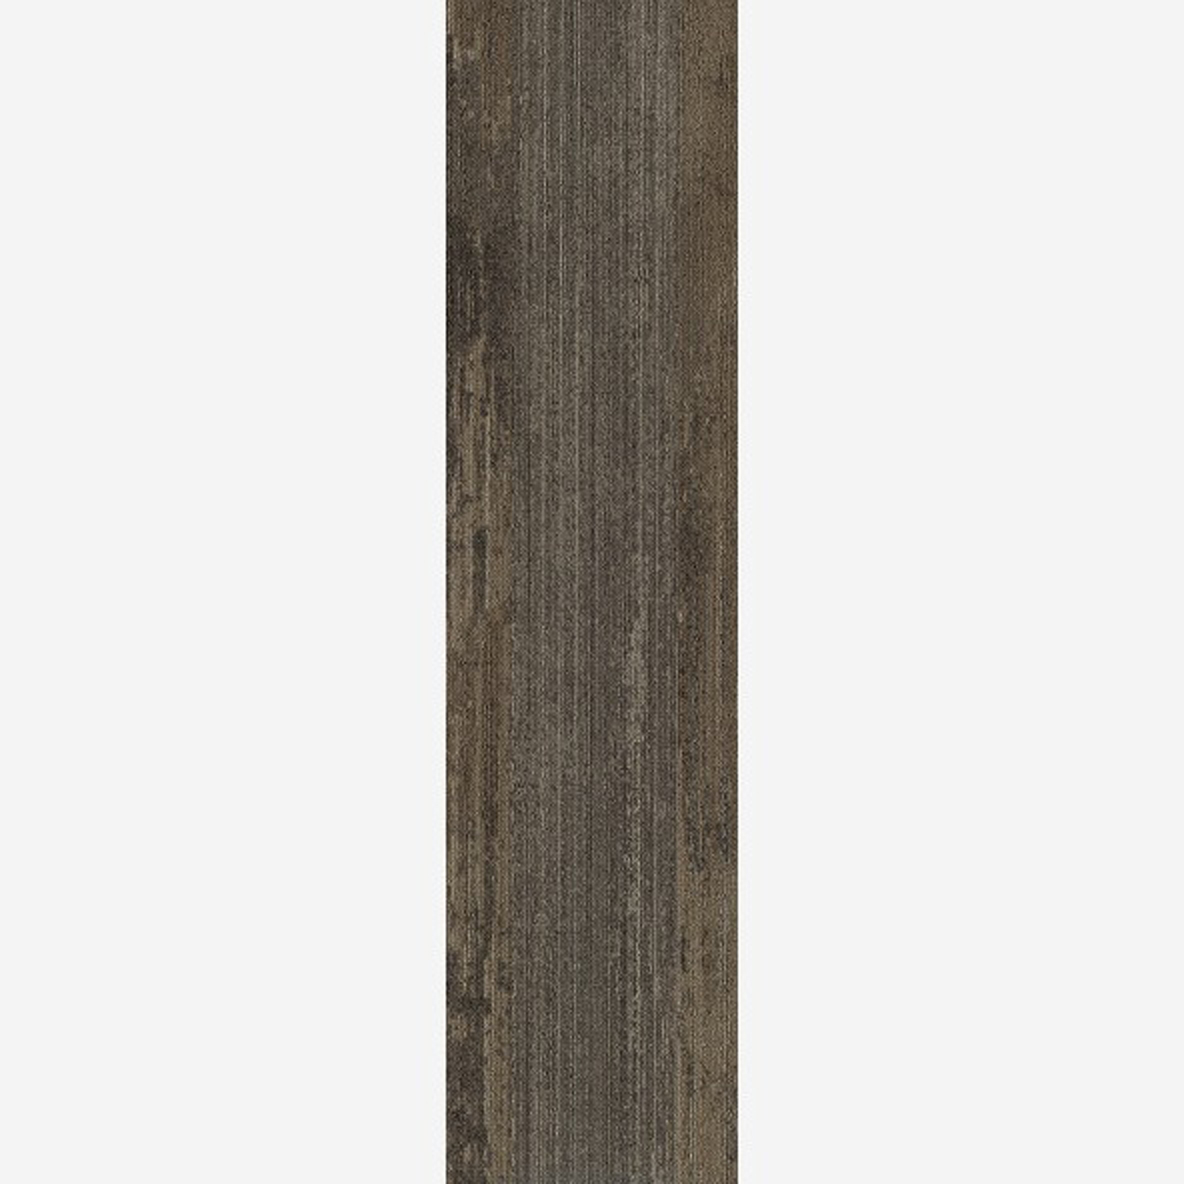 Mocha Medium Full Tile Ingrained Commercial Carpet Plank Neutral .28 Inch x 25 cm x 1 Meter Per Plank